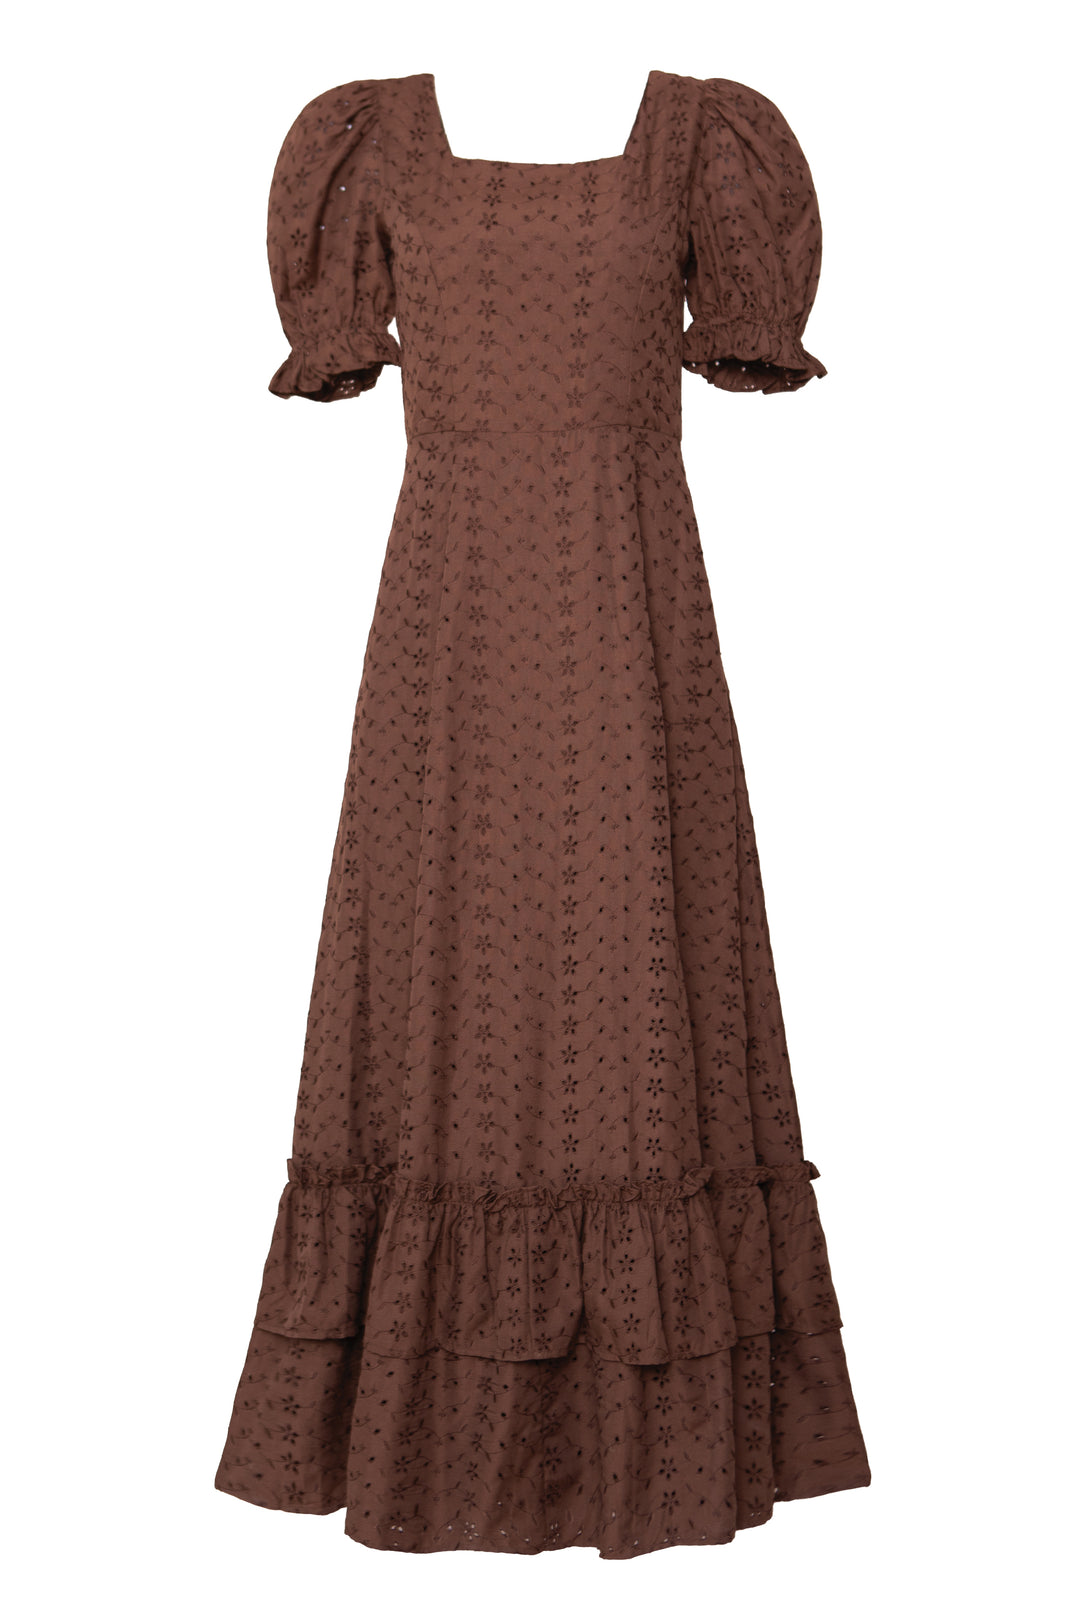 Rachel Dress in Brown